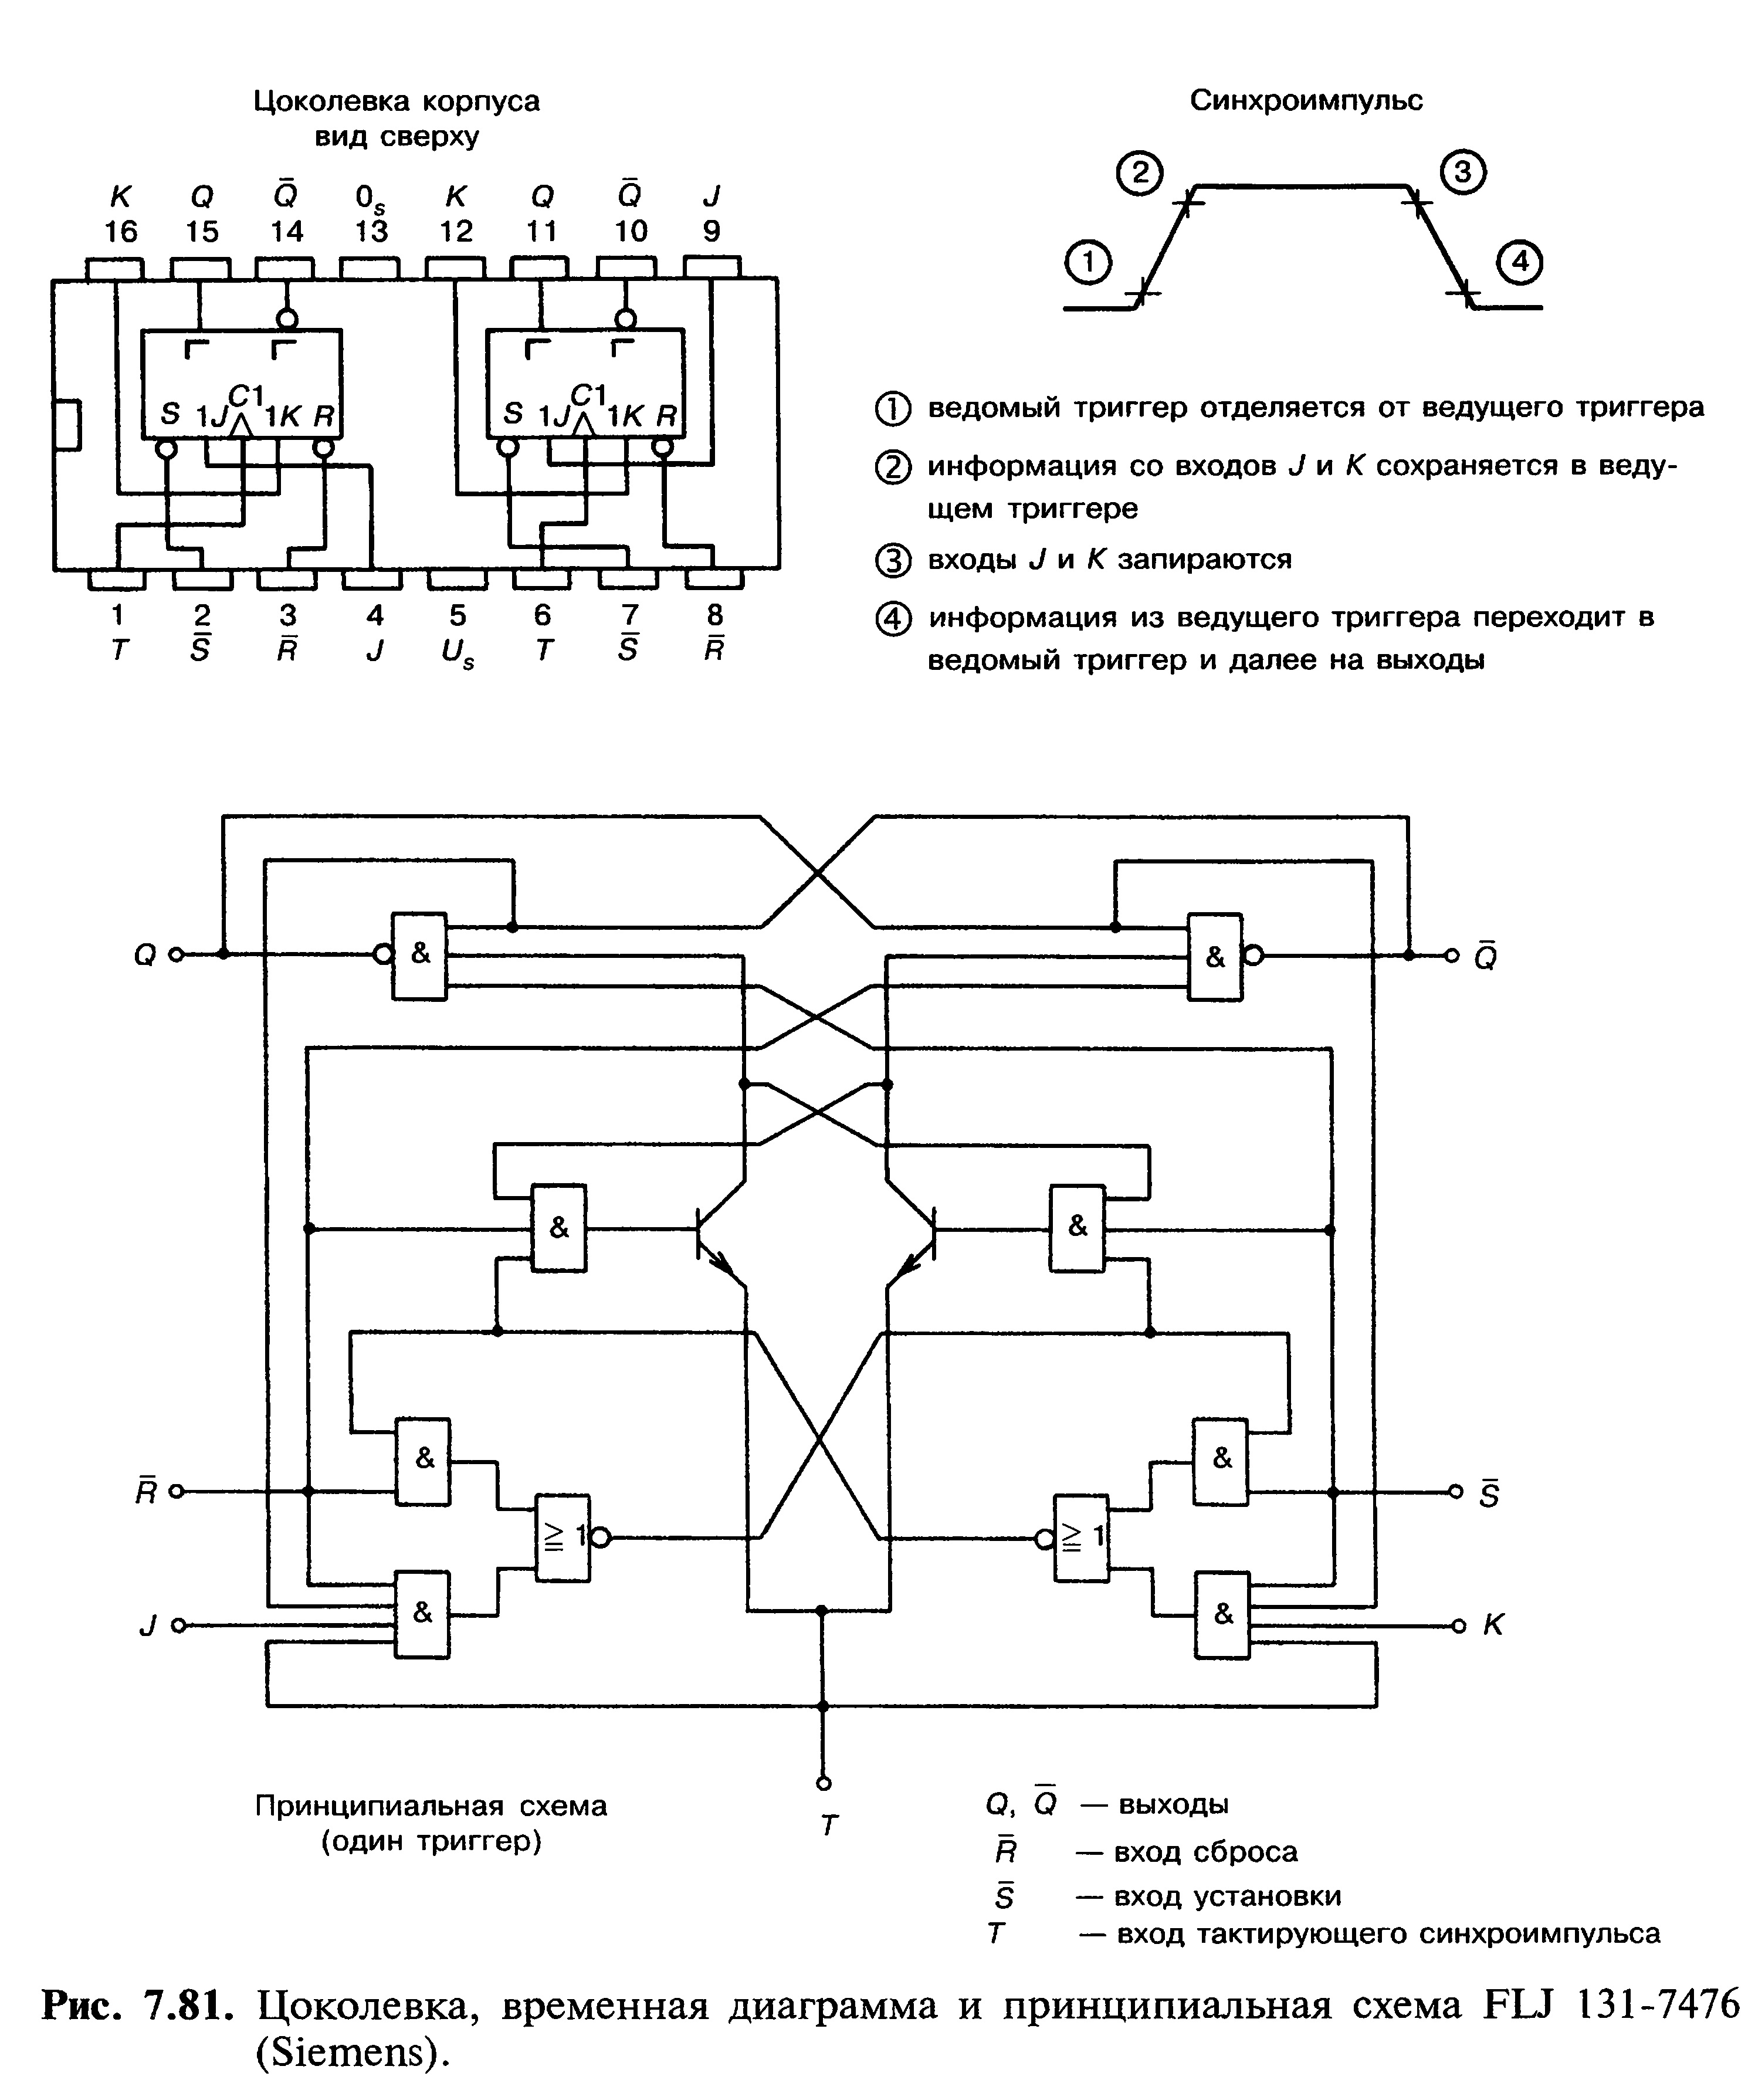 Цоколевка, временная диаграмма и принципиальная схема FLJ 131-7476 (Siemens)